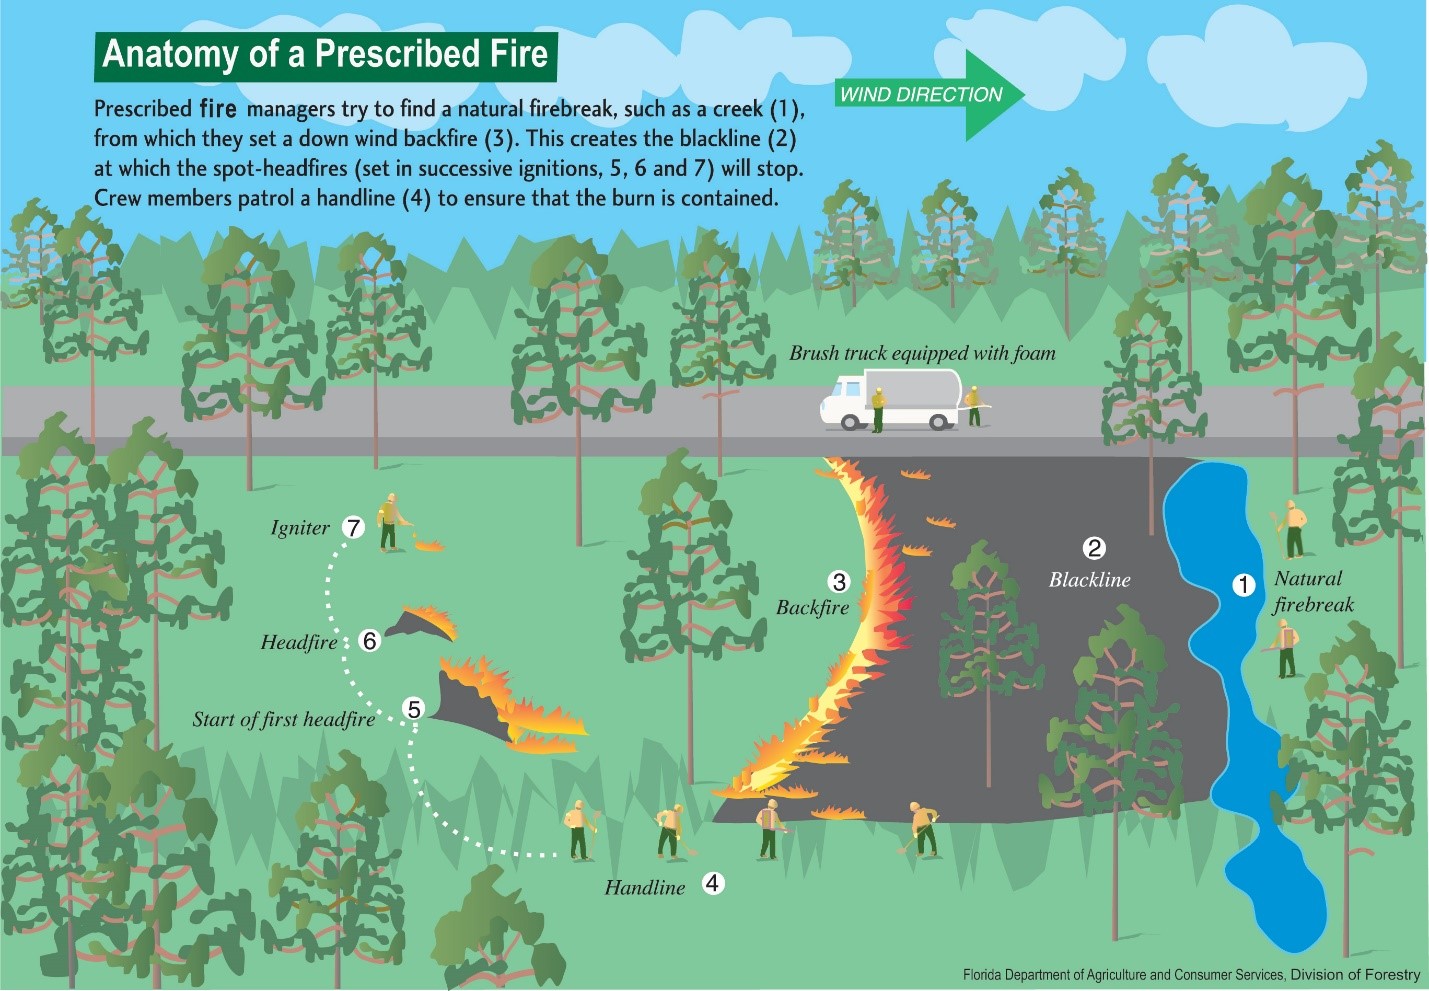 Prescribed fires consist of several elements